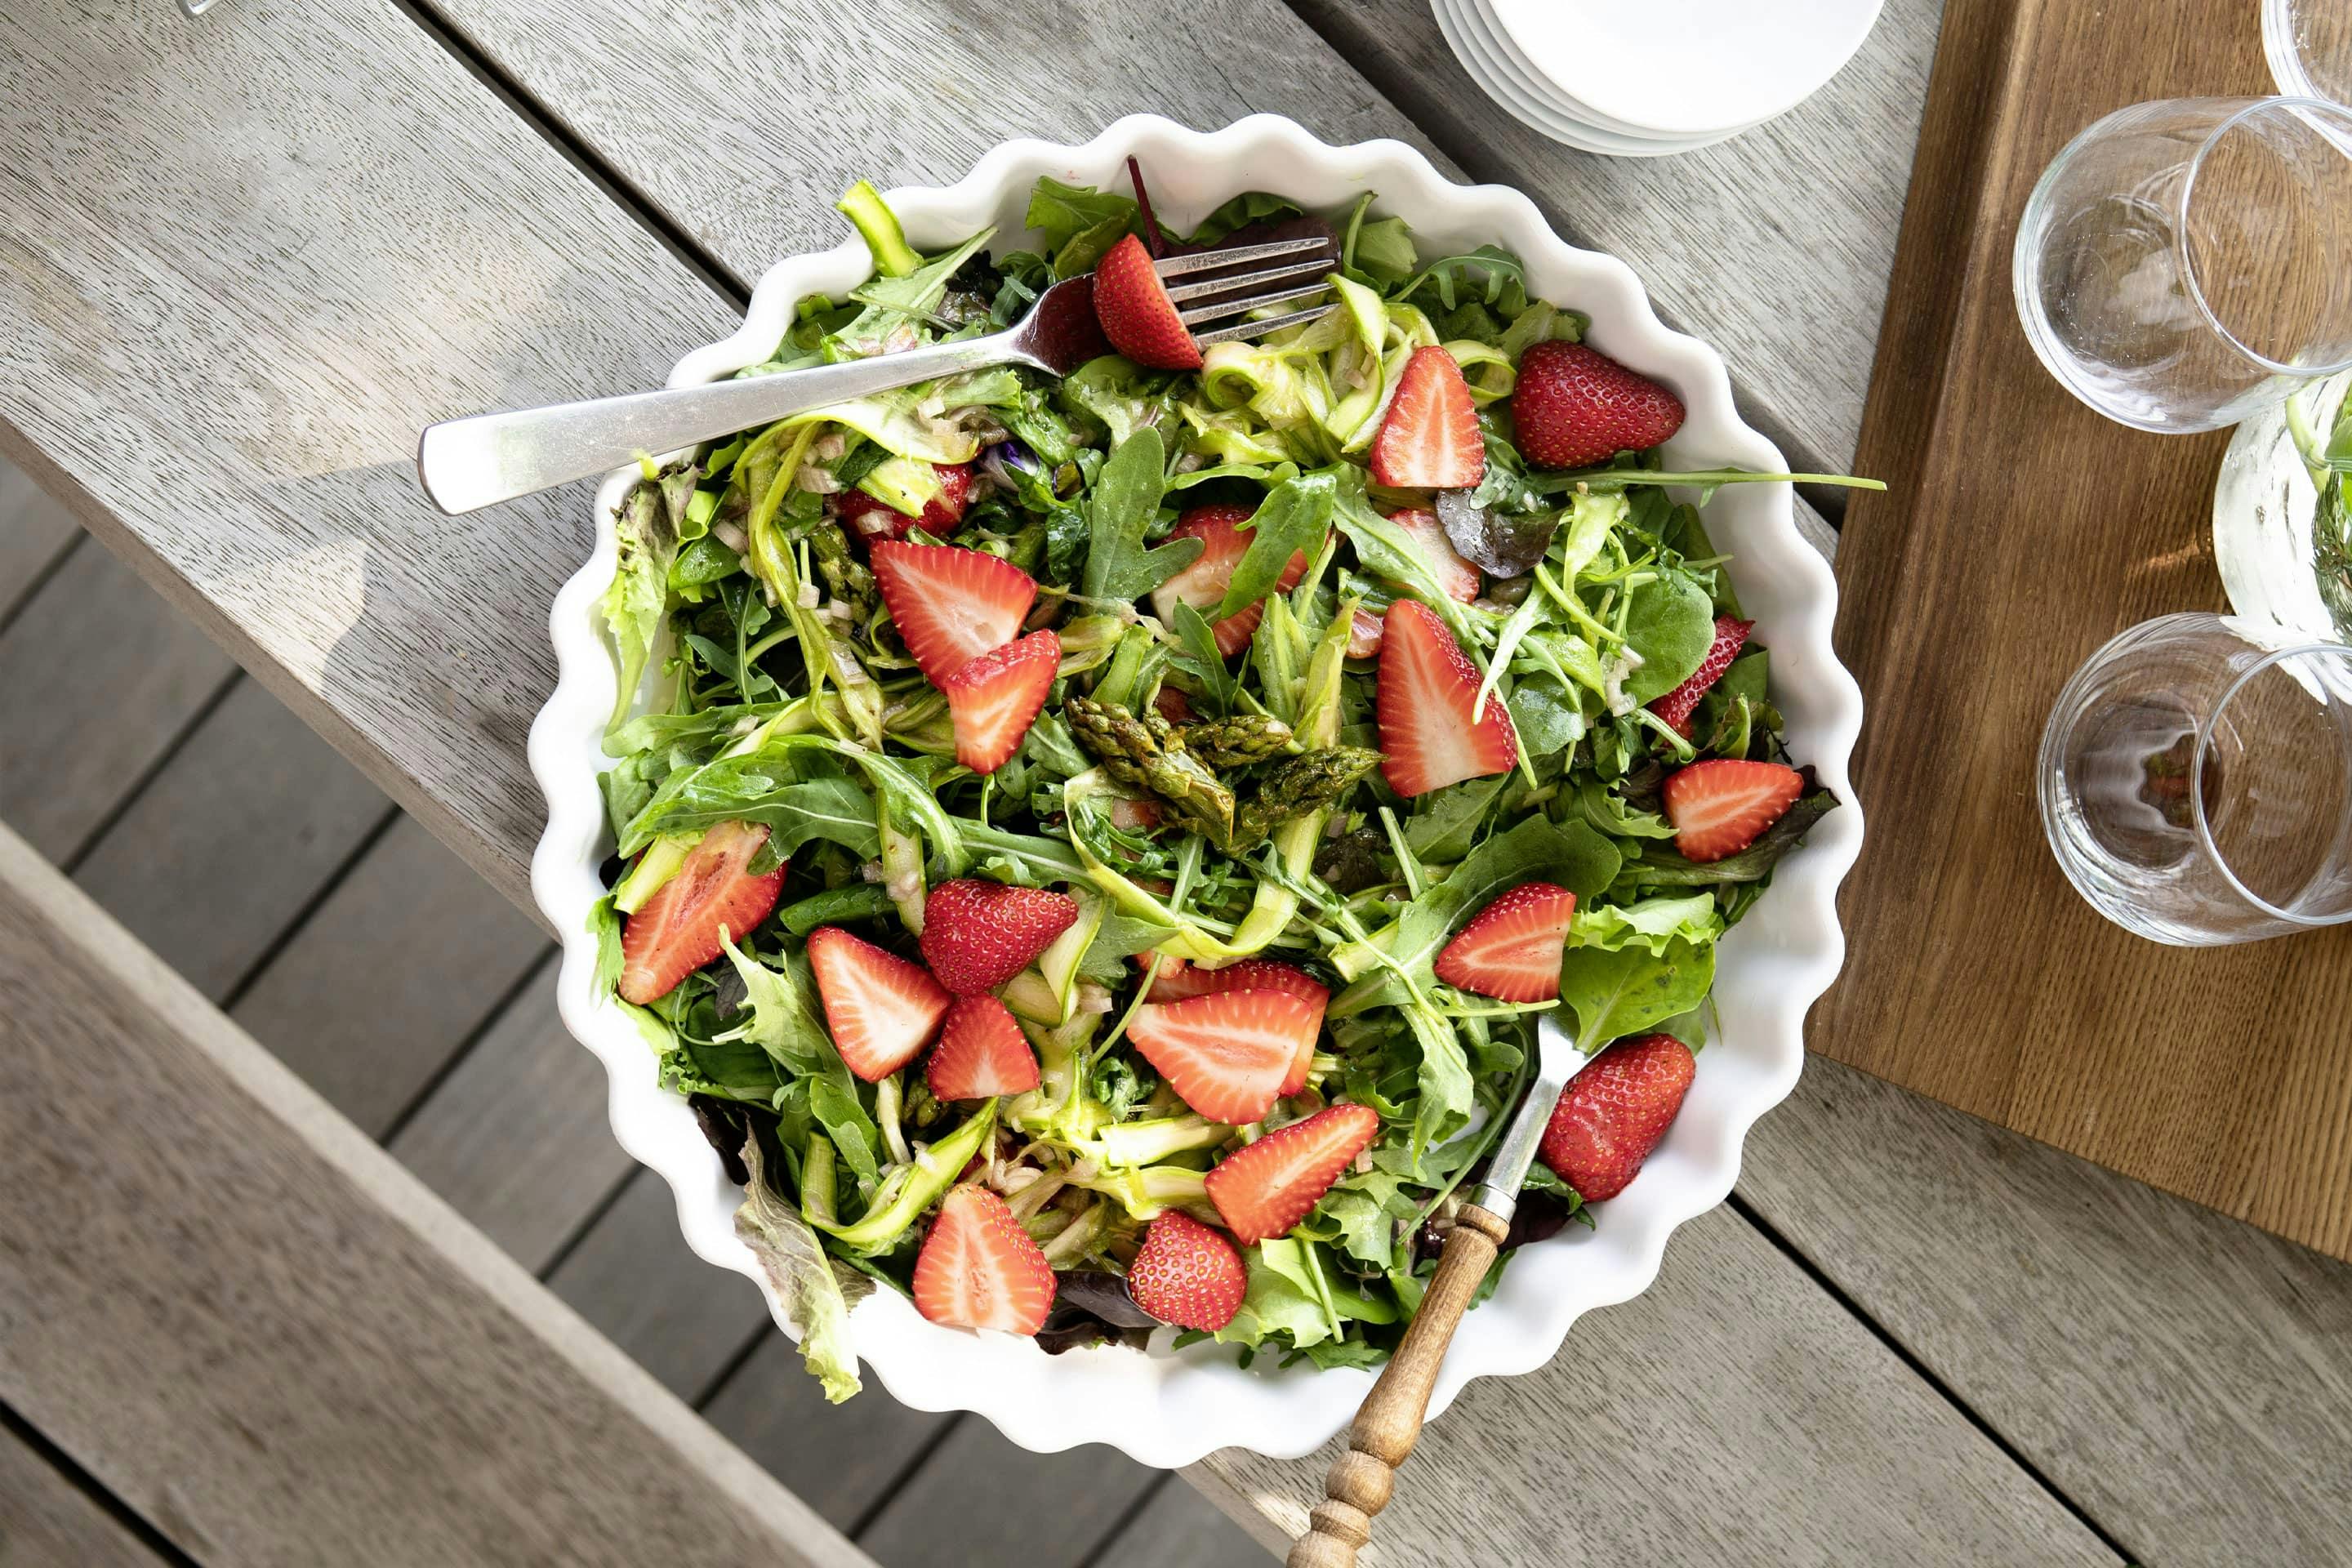 Erdbeer-Spargel-Salat mit Grillgewürzsalz in einer großen weißen Schüssel angerichtet und auf einem Holztische stehend.